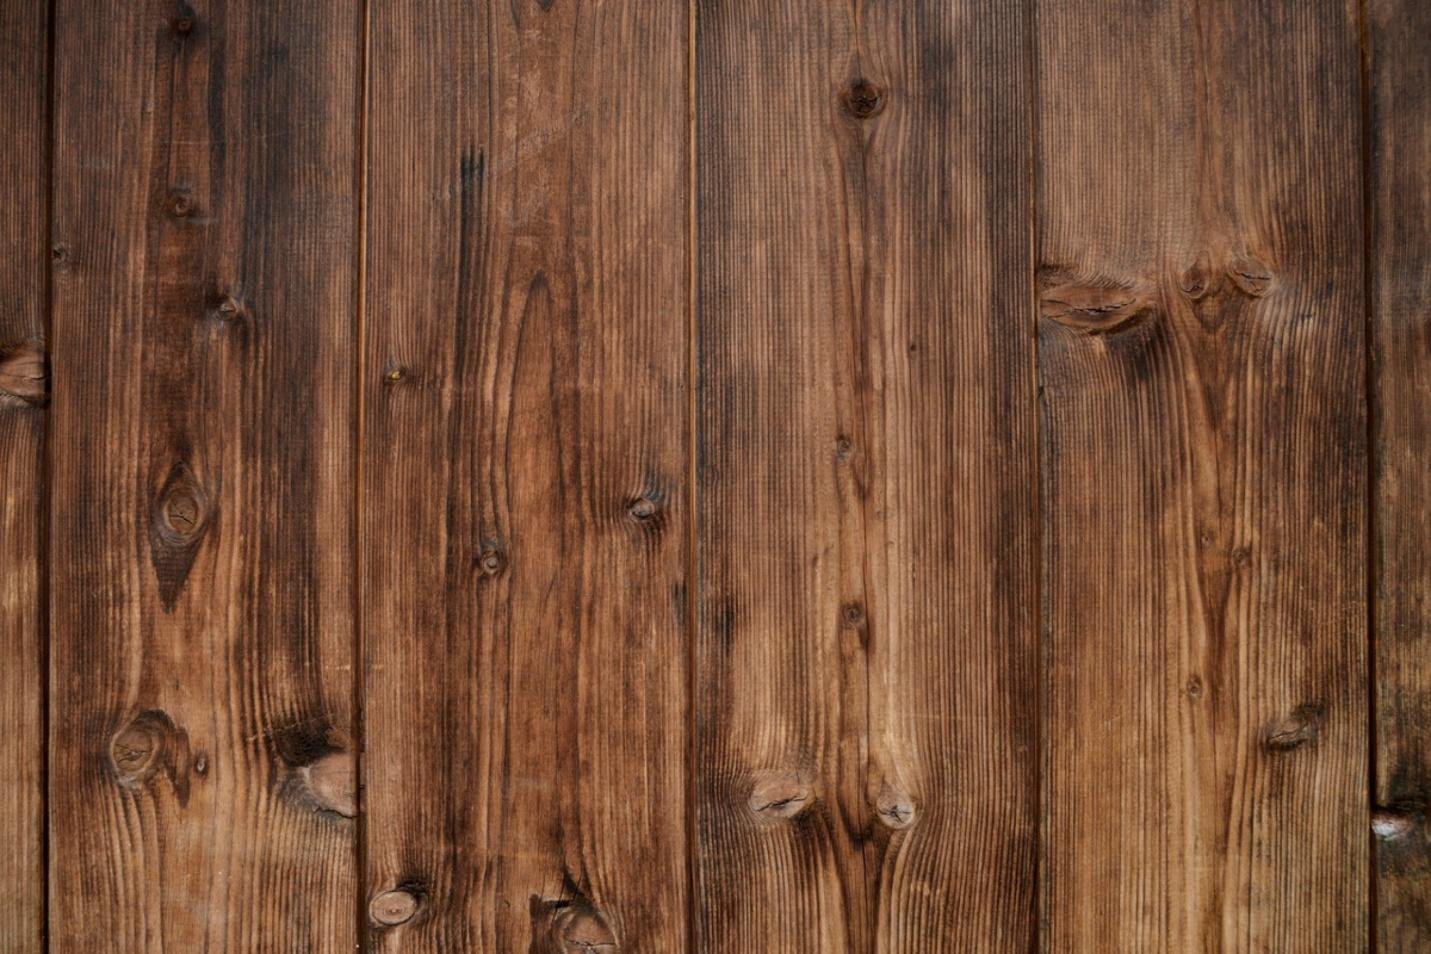 Distressed Hardwood Floors